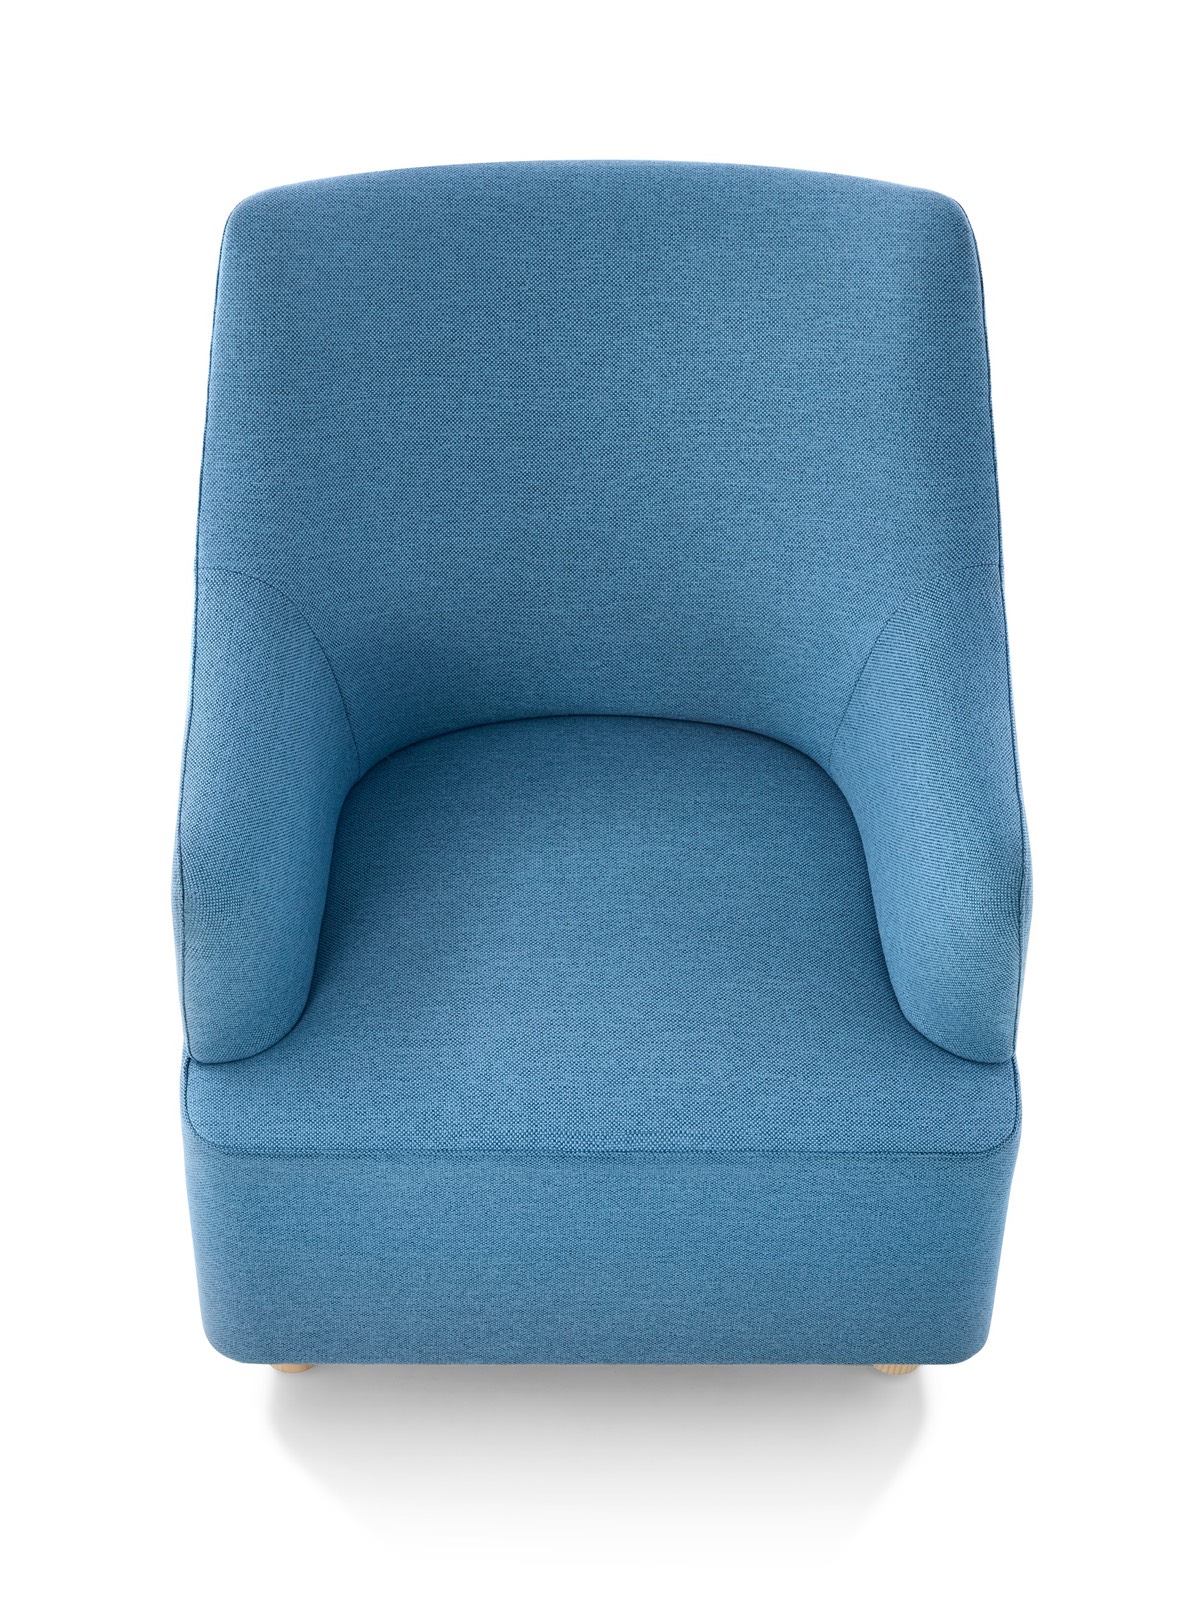 Vista superior de uma cadeira Club Plex azul.